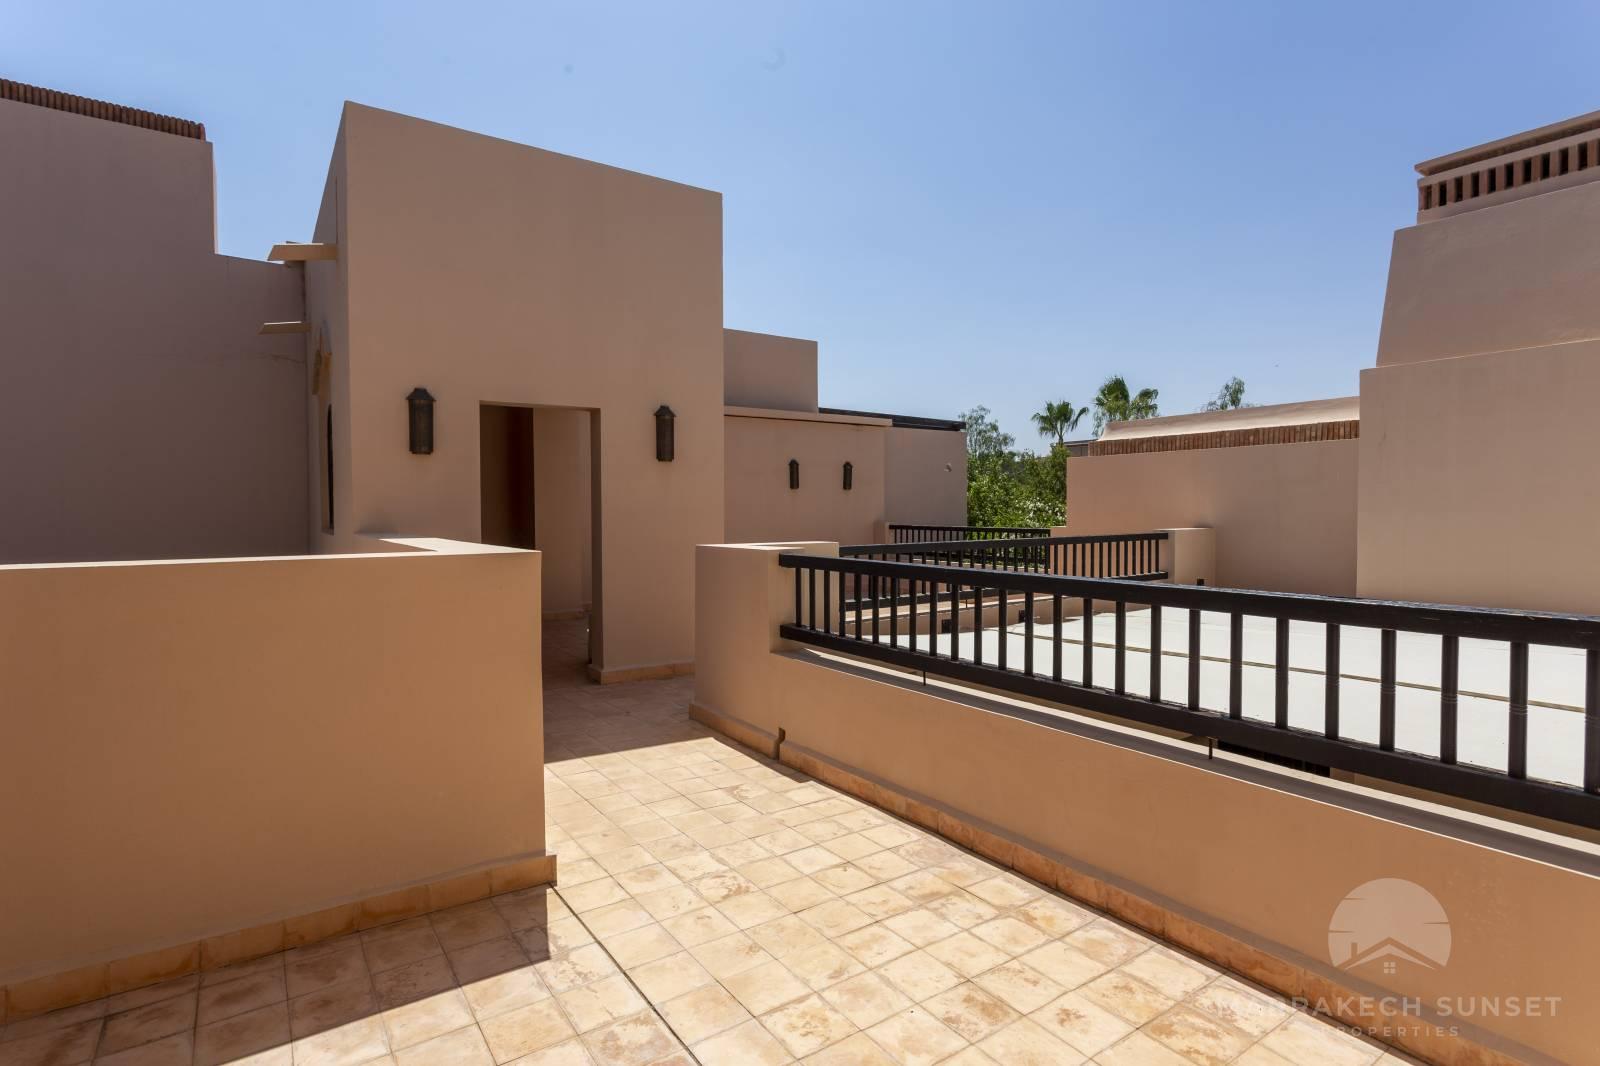 Villa de luxe unique et moderne de 02 chambres à vendre à Marrakech dans un complexe résidentiel